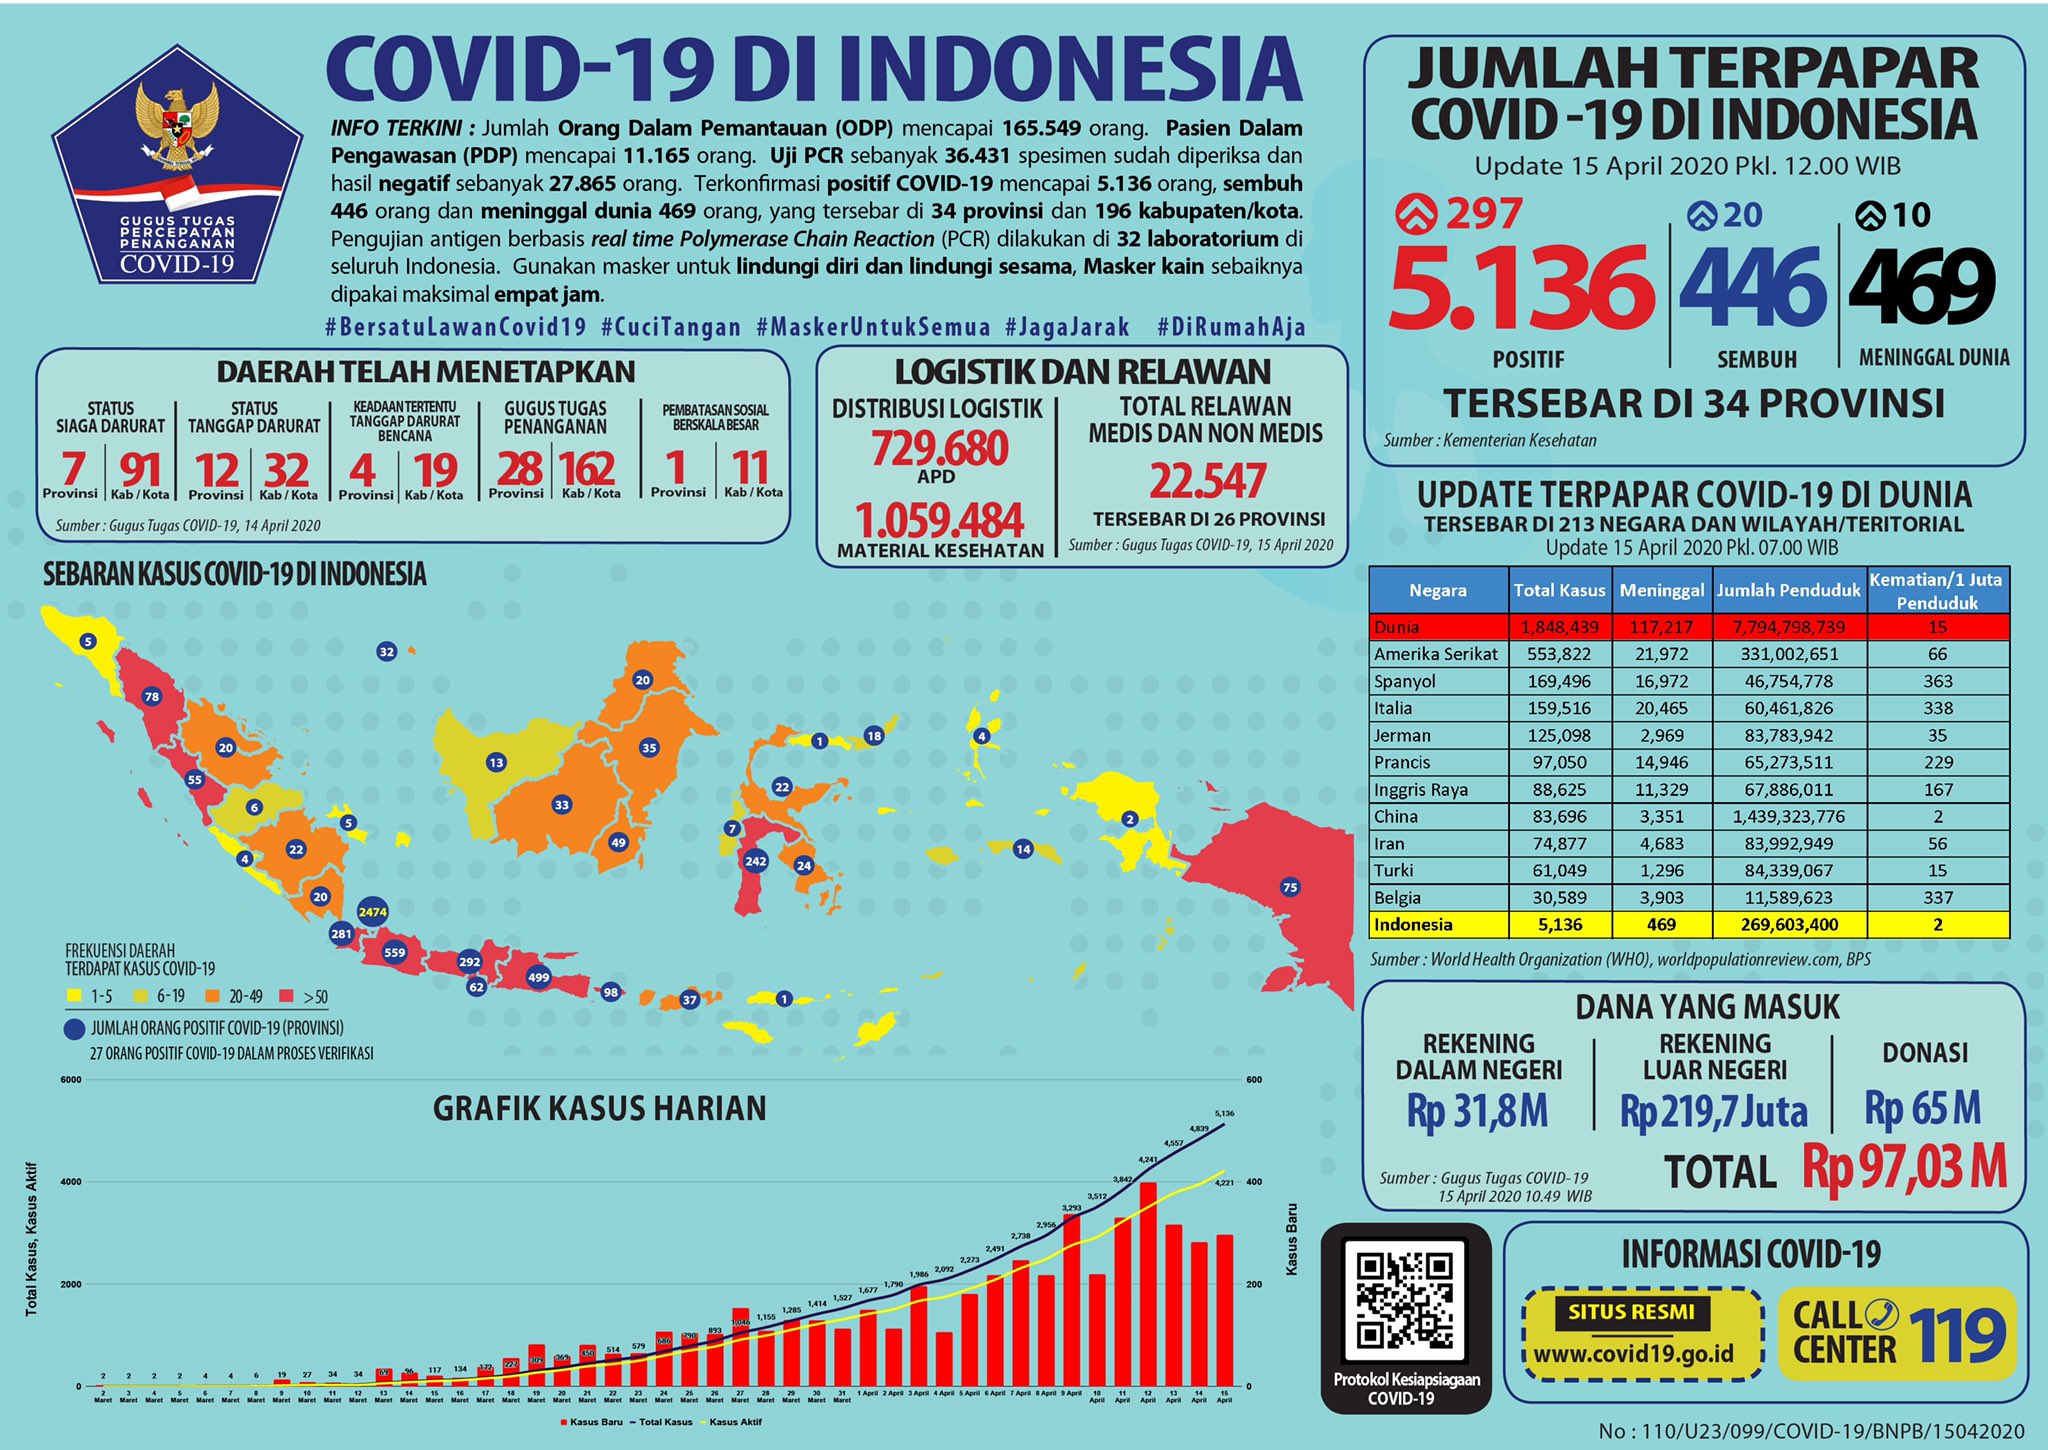 Update 15 April 2020 Infografis Covid-19: 5136 Positif, 446 Sembuh, 469 Meninggal